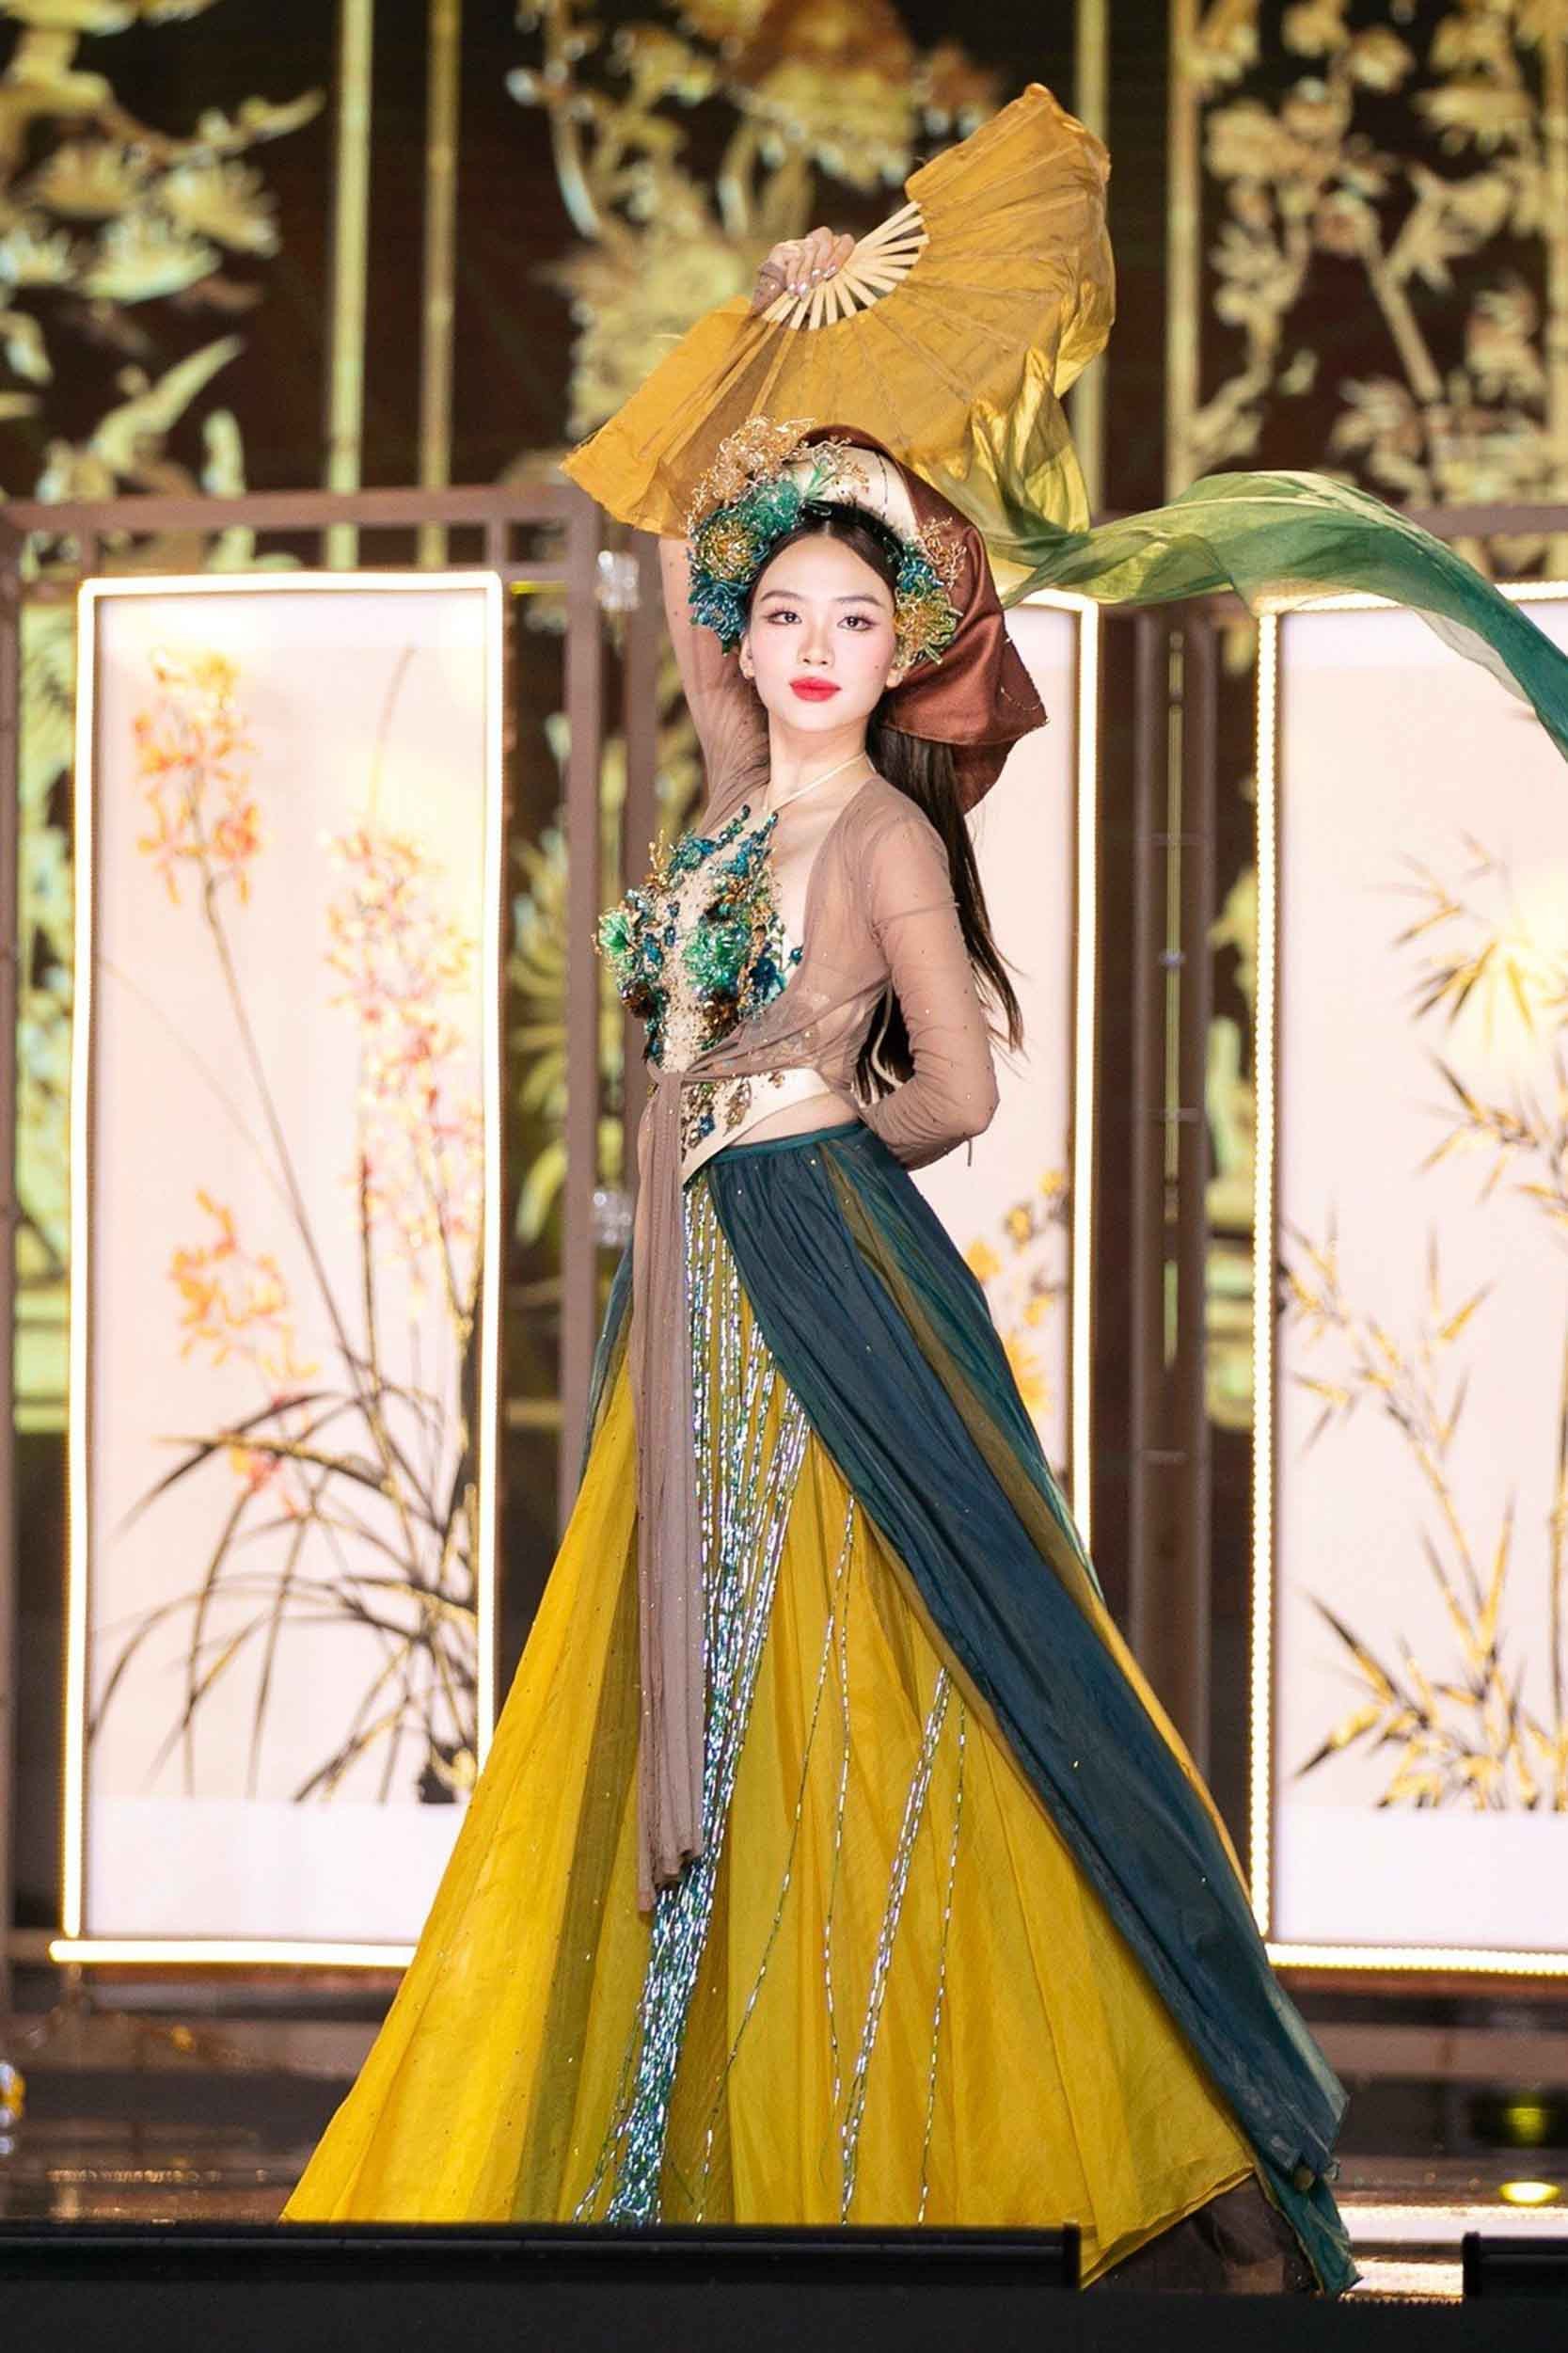 Fan tranh luận trang phục của Mai Phương ở Hoa hậu Thế giới - Ảnh 2.